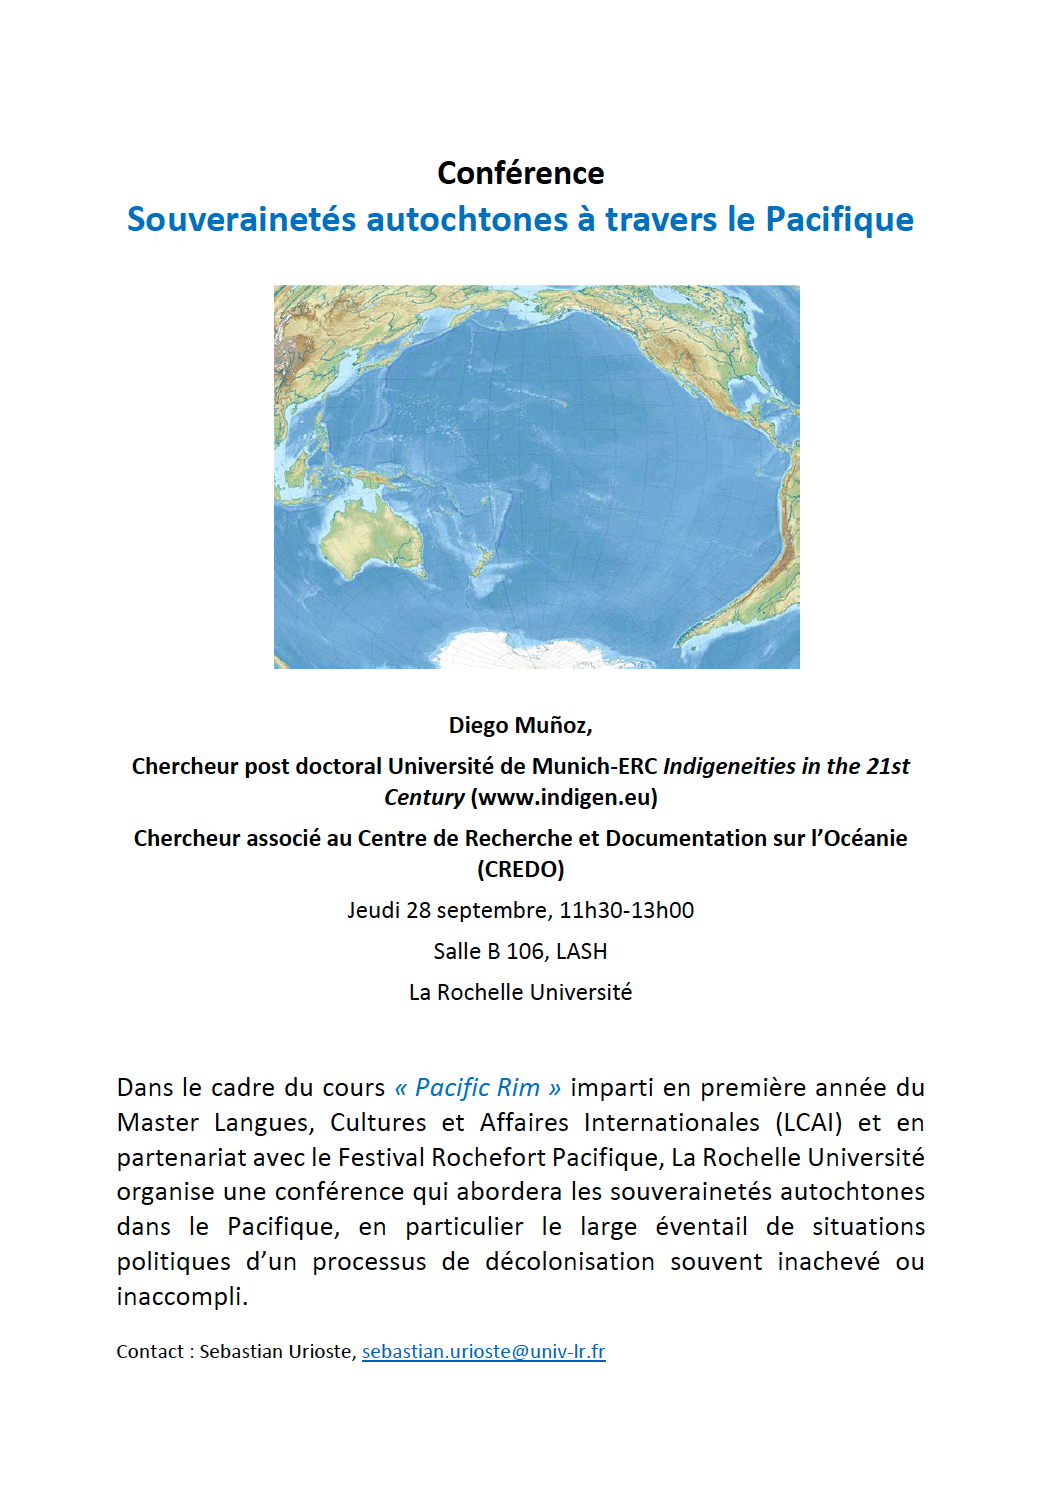 Conference Souverainetes autochtines Pacifique La Rochelle Munoz